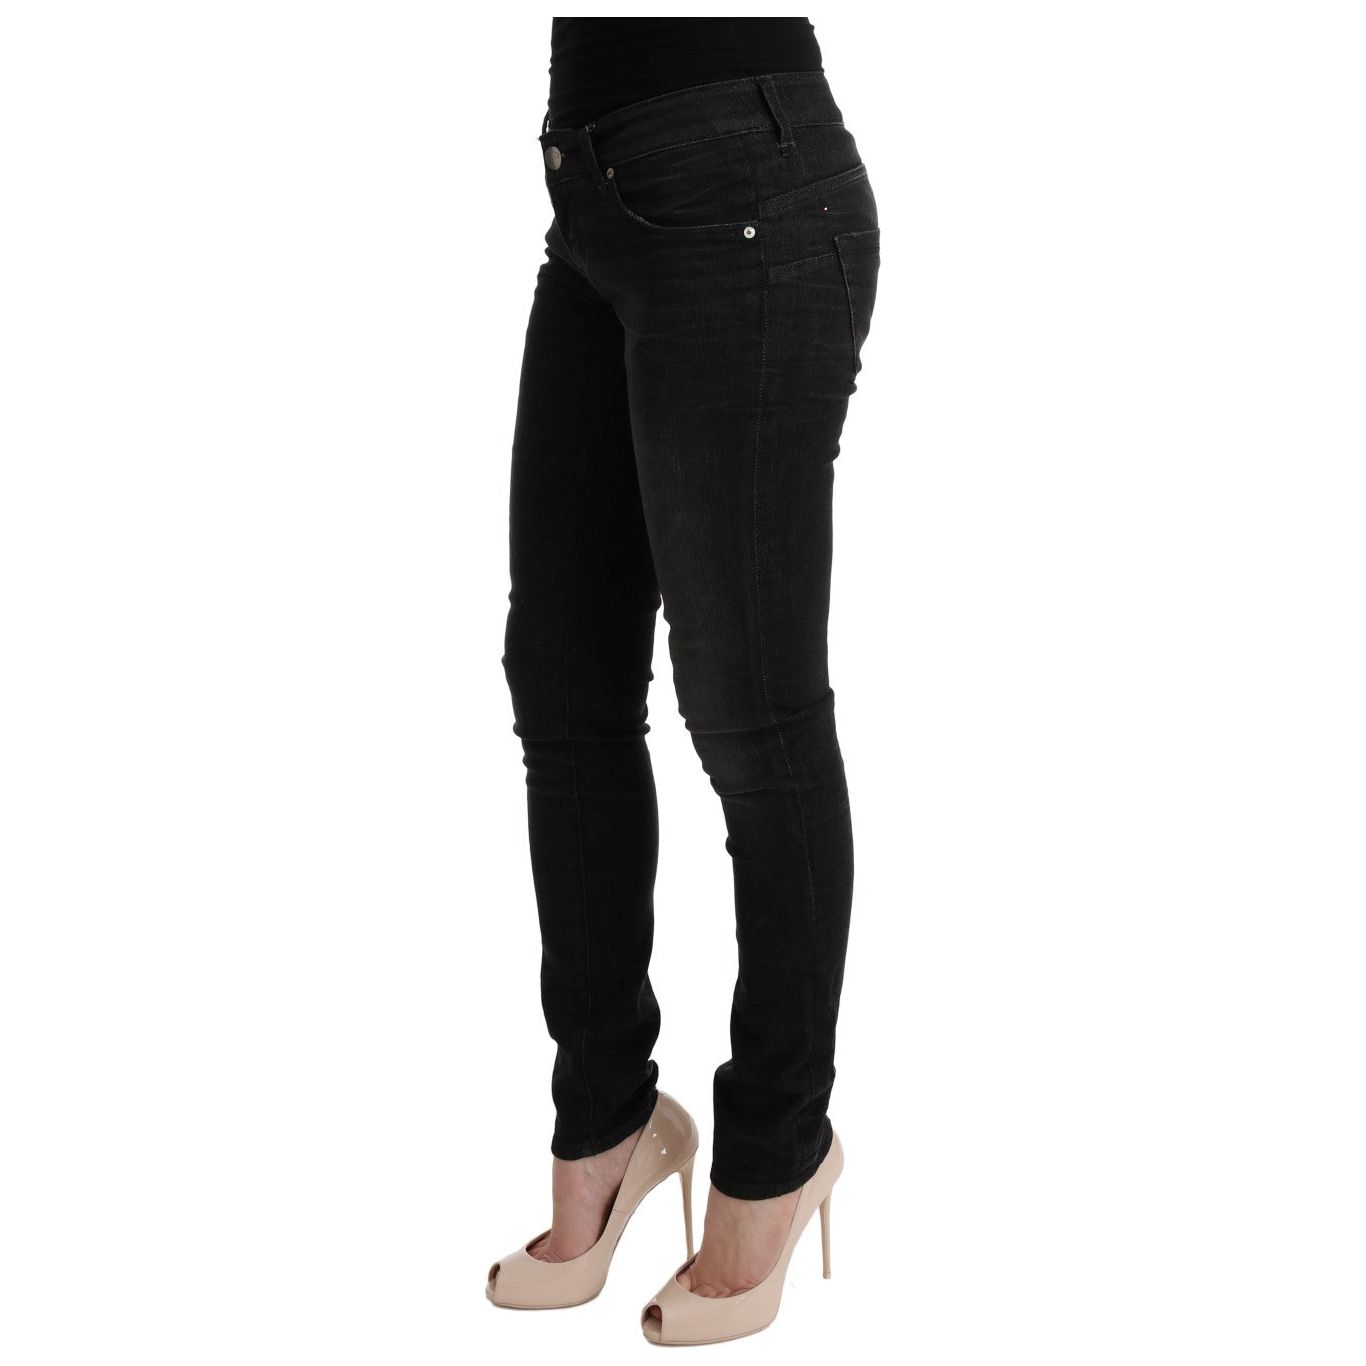 Acht Chic Slim Fit Black Cotton Jeans black-denim-cotton-bottoms-slim-fit-jeans Jeans & Pants